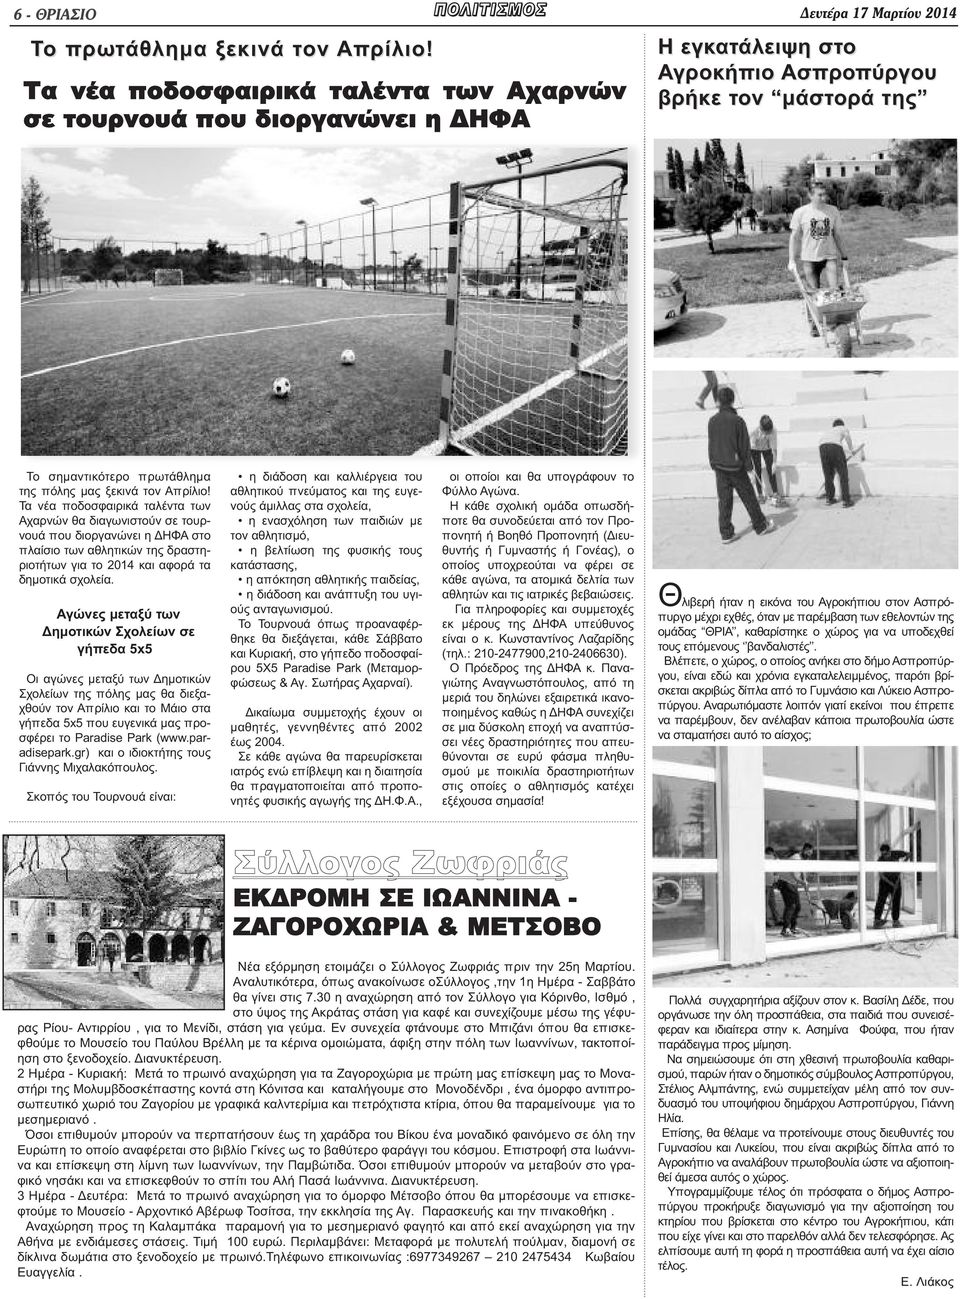 Τα νέα ποδοσφαιρικά ταλέντα των Αχαρνών θα διαγωνιστούν σε τουρνουά που διοργανώνει η ΔΗΦΑ στο πλαίσιο των αθλητικών της δραστηριοτήτων για το 2014 και αφορά τα δημοτικά σχολεία.